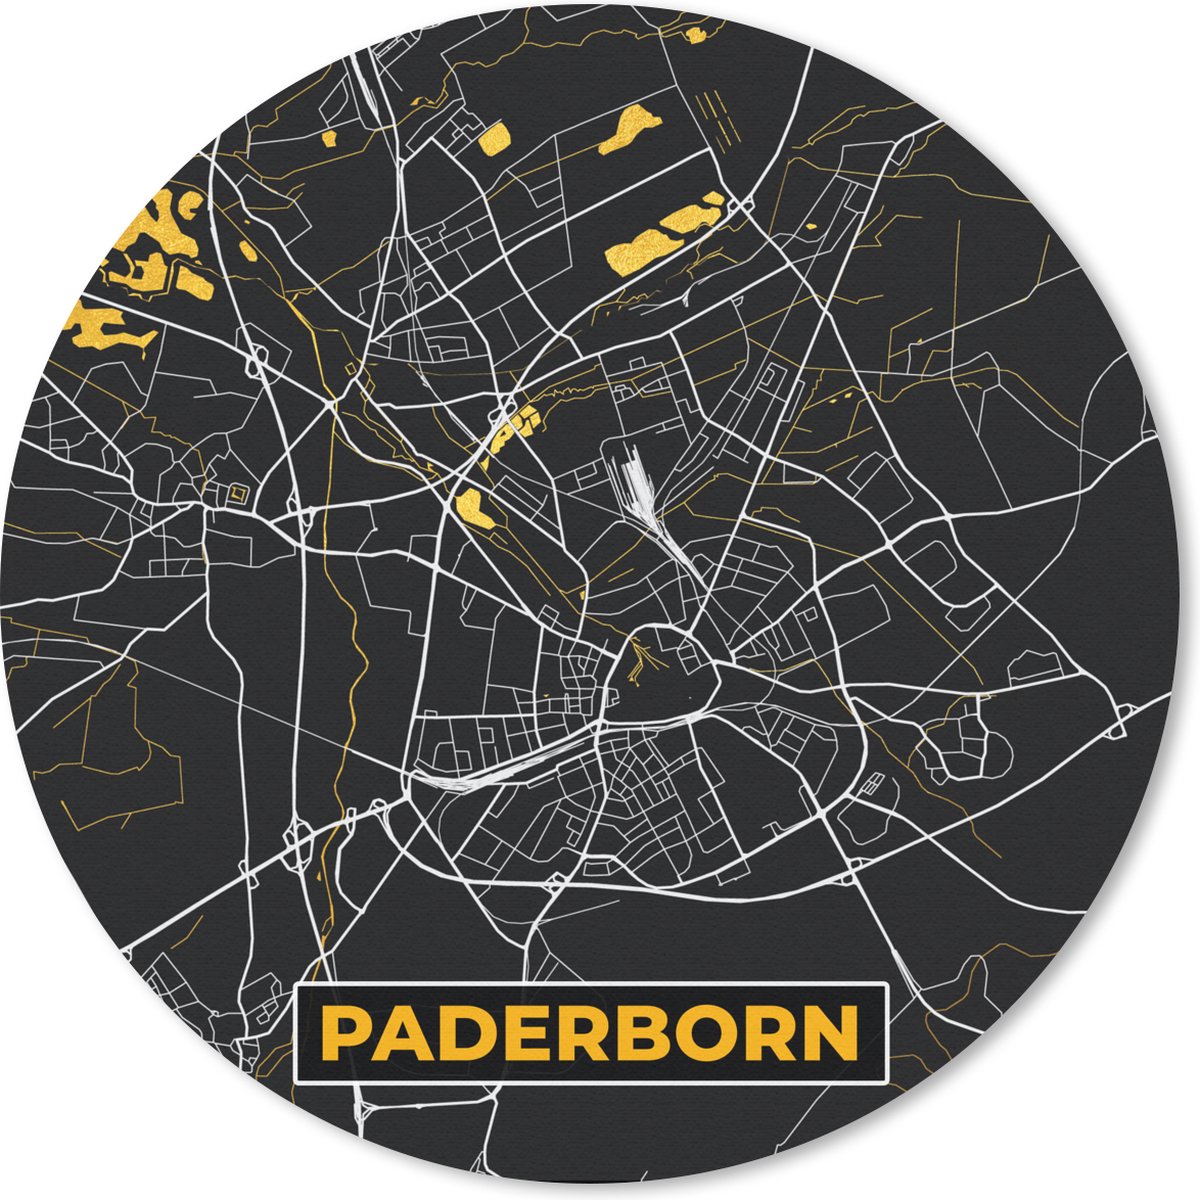 Muismat - Mousepad - Rond - Stadskaart – Kaart – Paderborn – Gold – Duitsland – Plattegrond - 30x30 cm - Ronde muismat - MousePadParadise